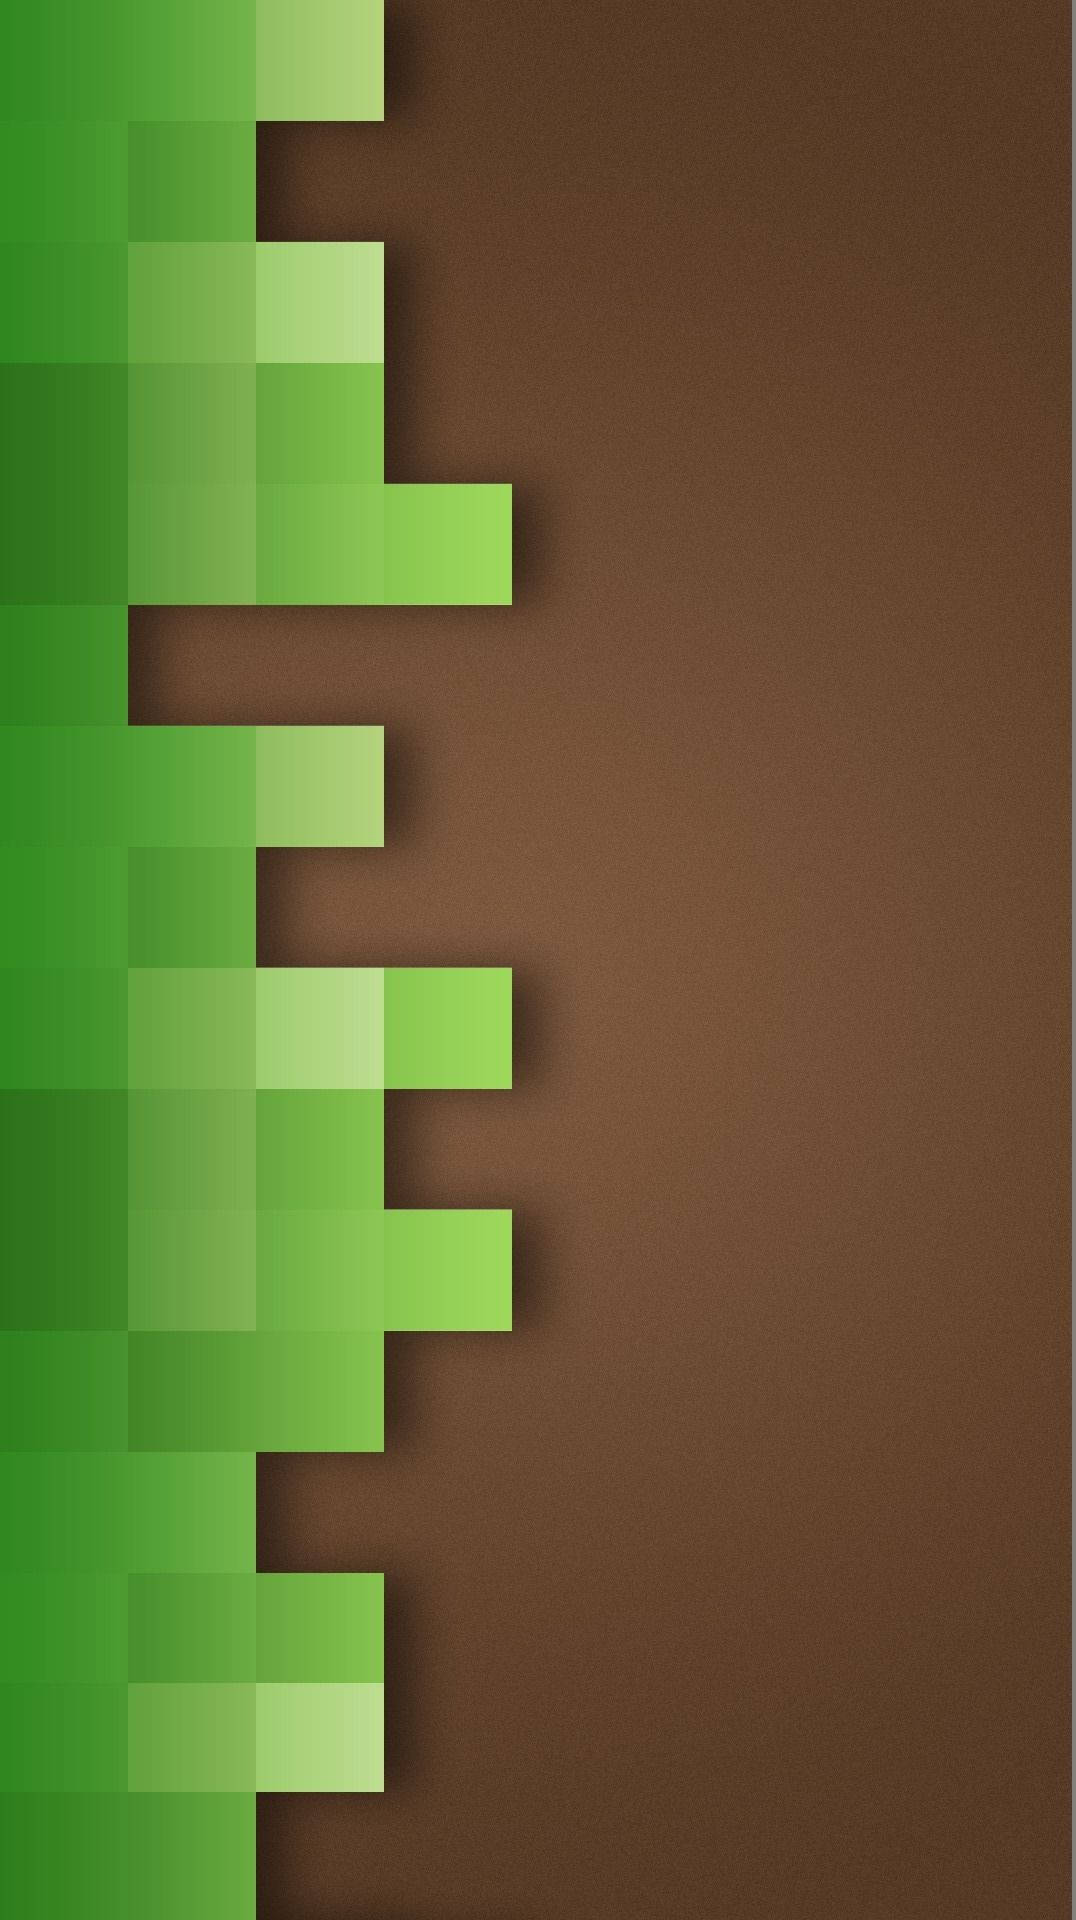 Minecraft Phone Green Brown Background